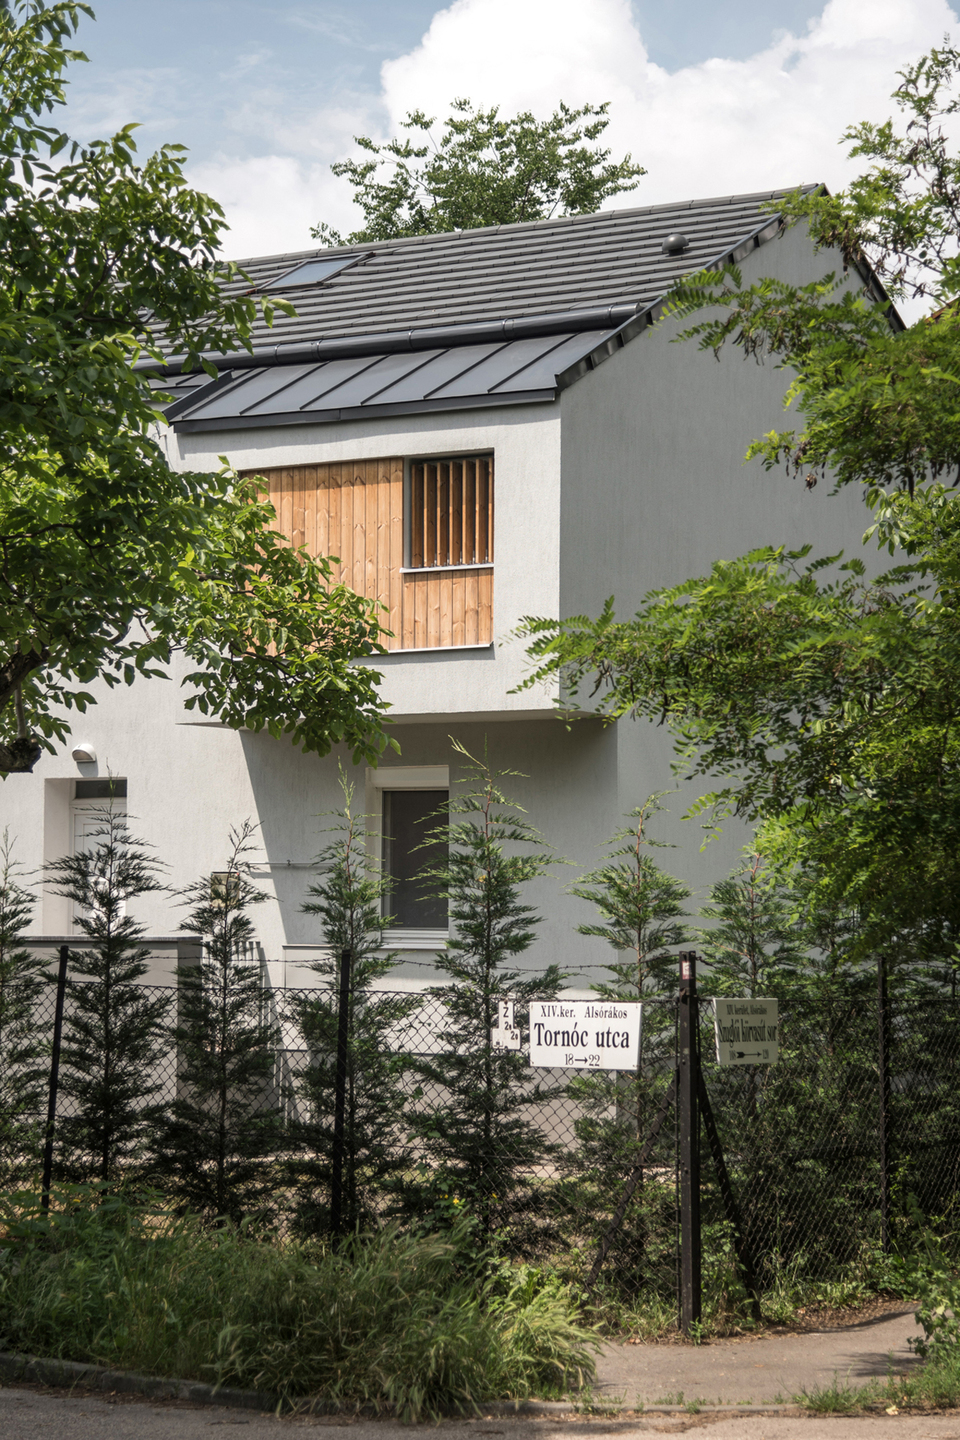 Zuglói családi ház bővítése – tervező: batlab – fotó: Juhász Norbert